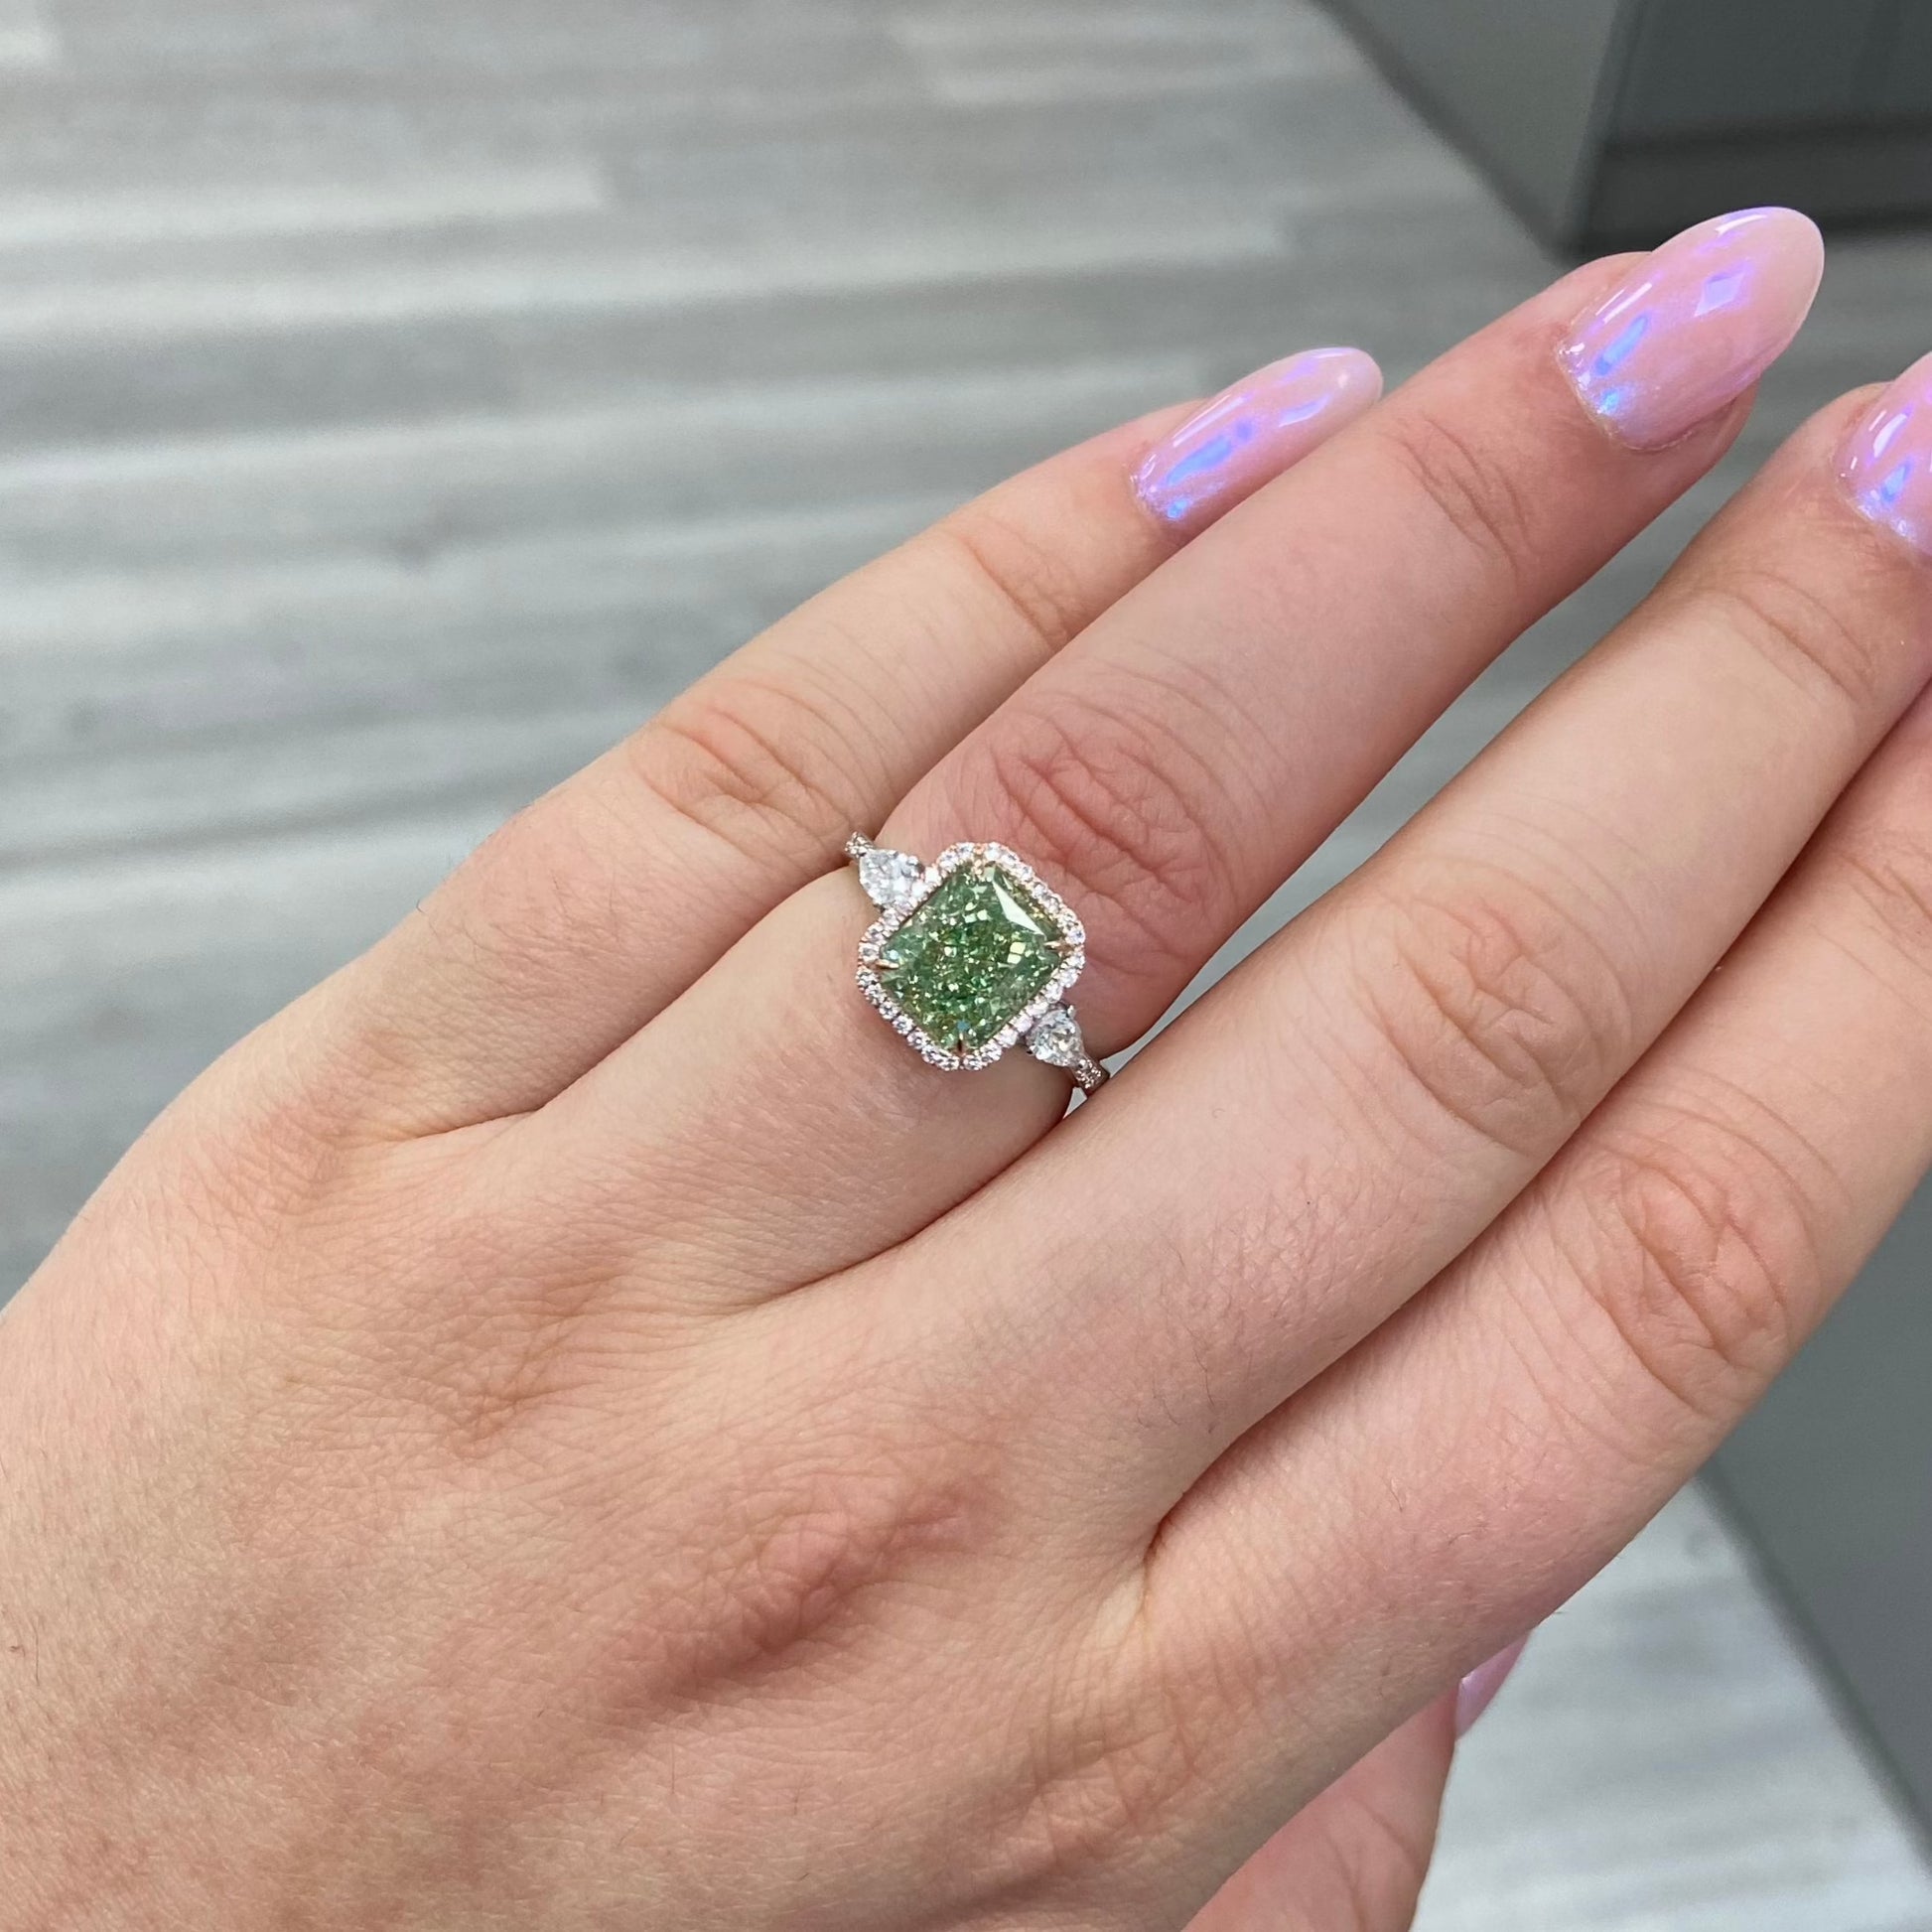 GREEN DIAMOND RING. JLO GREEN DIAMOND. GREEN DIAMONDS.